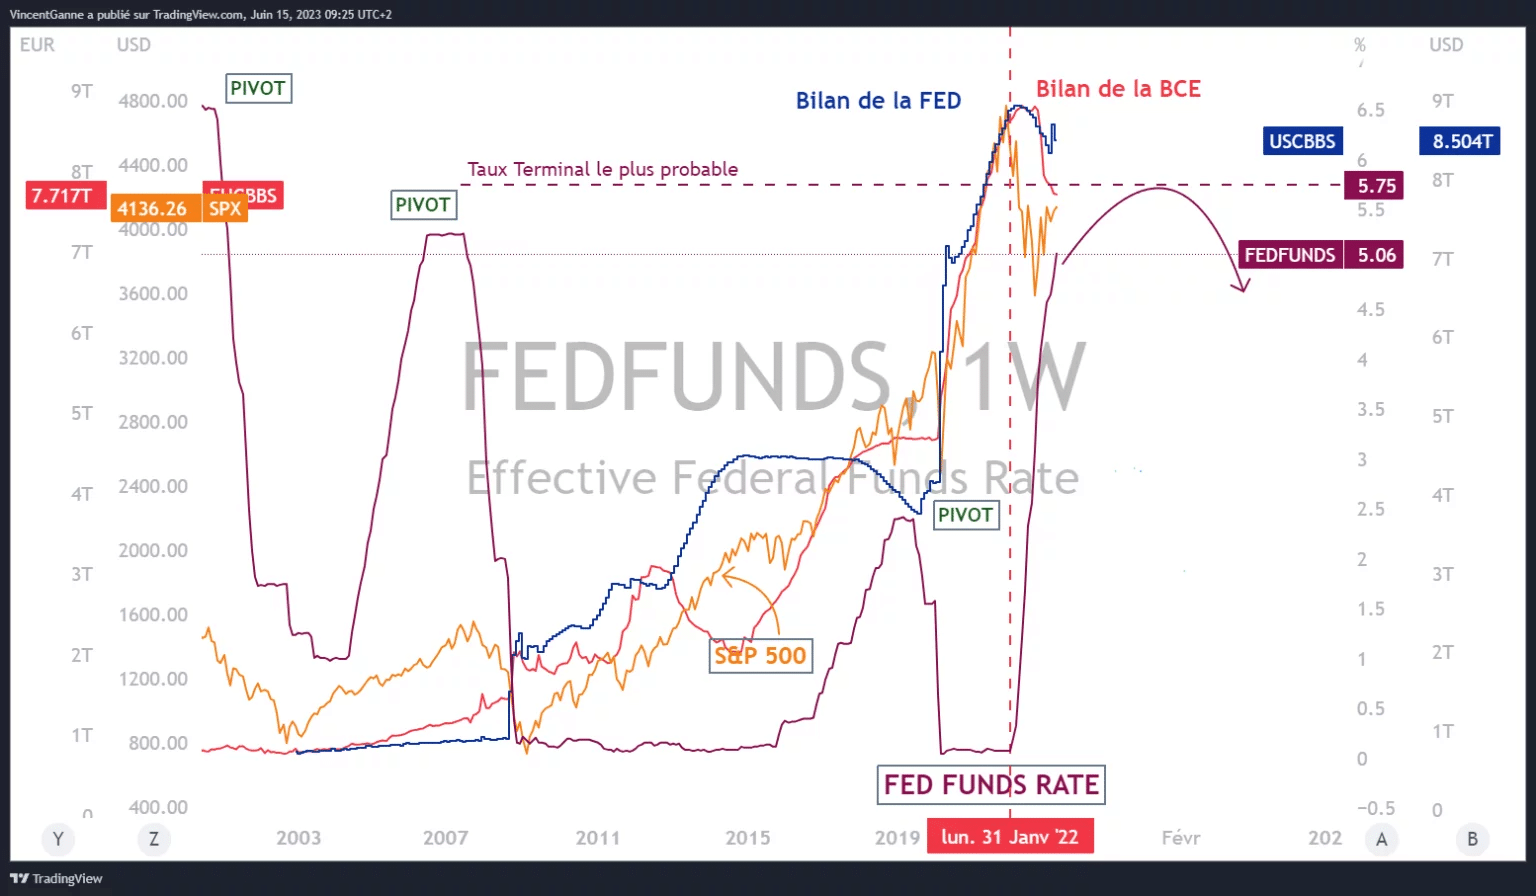 用TradingView网站制作的图表，显示了以下信息：联邦基金利率、最可能的联邦基金终端利率、联邦基金资产负债表和欧洲央行资产负债表